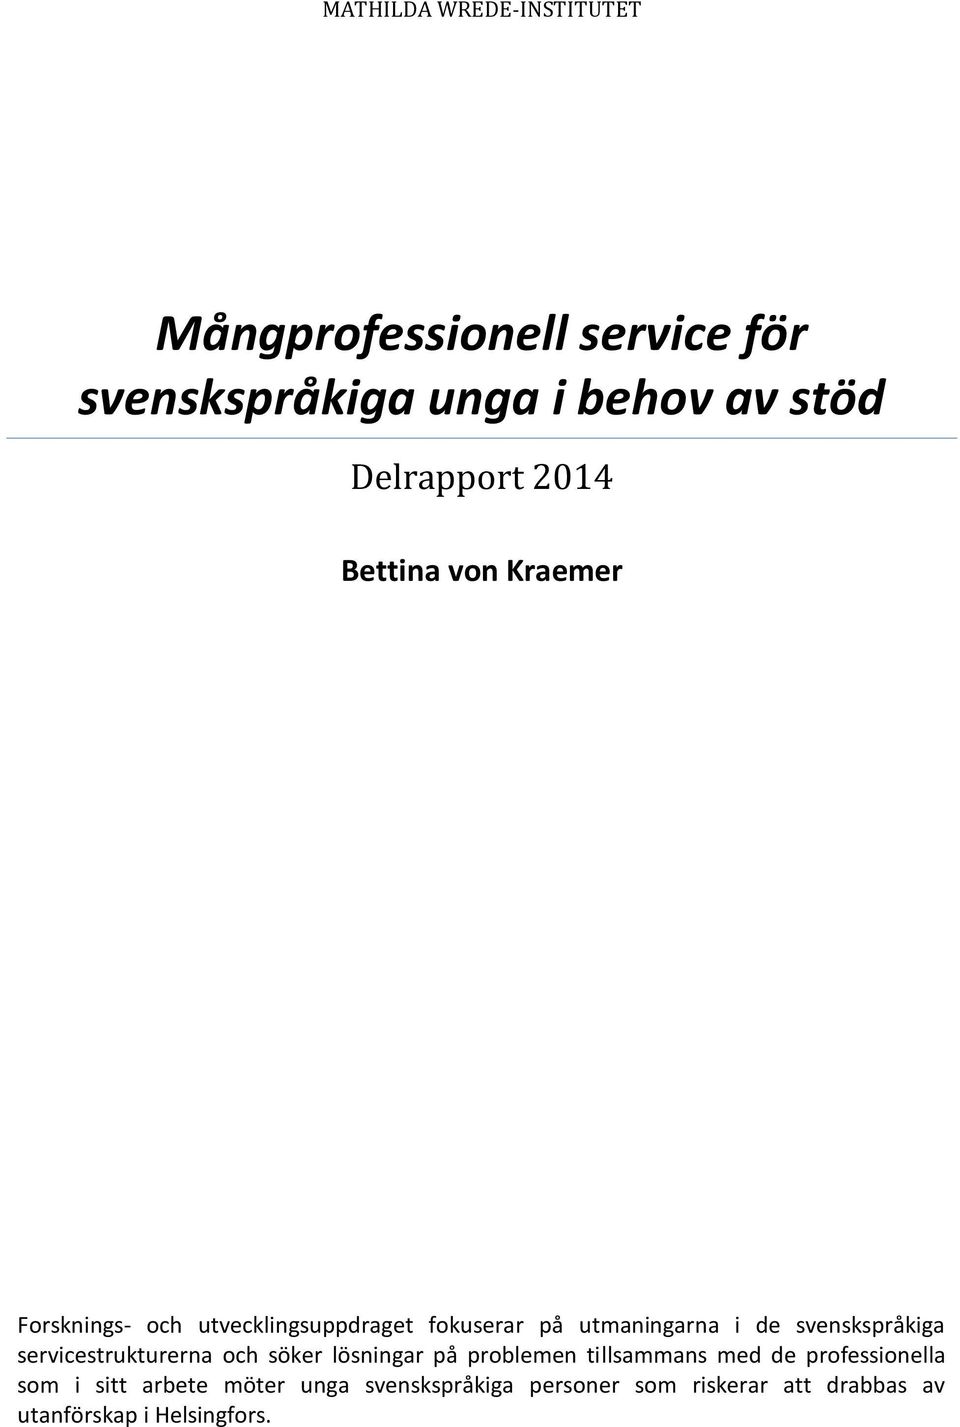 de svenskspråkiga servicestrukturerna och söker lösningar på problemen tillsammans med de